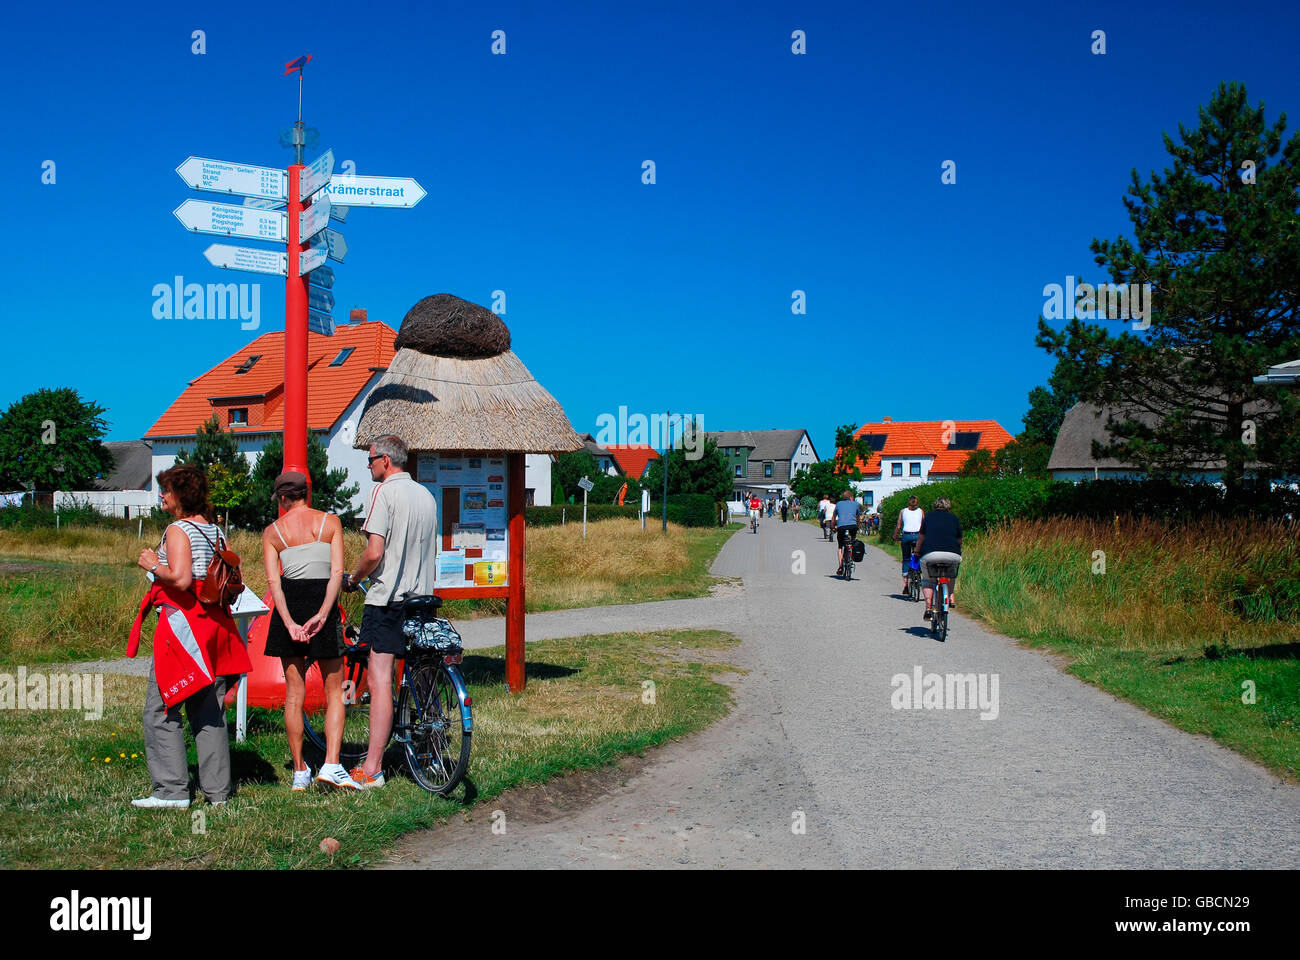 Ostseeinsel, Hiddensee, Touristen, Friesenhaeuser, Mecklenburg-Vorpommern, Allemagne Banque D'Images